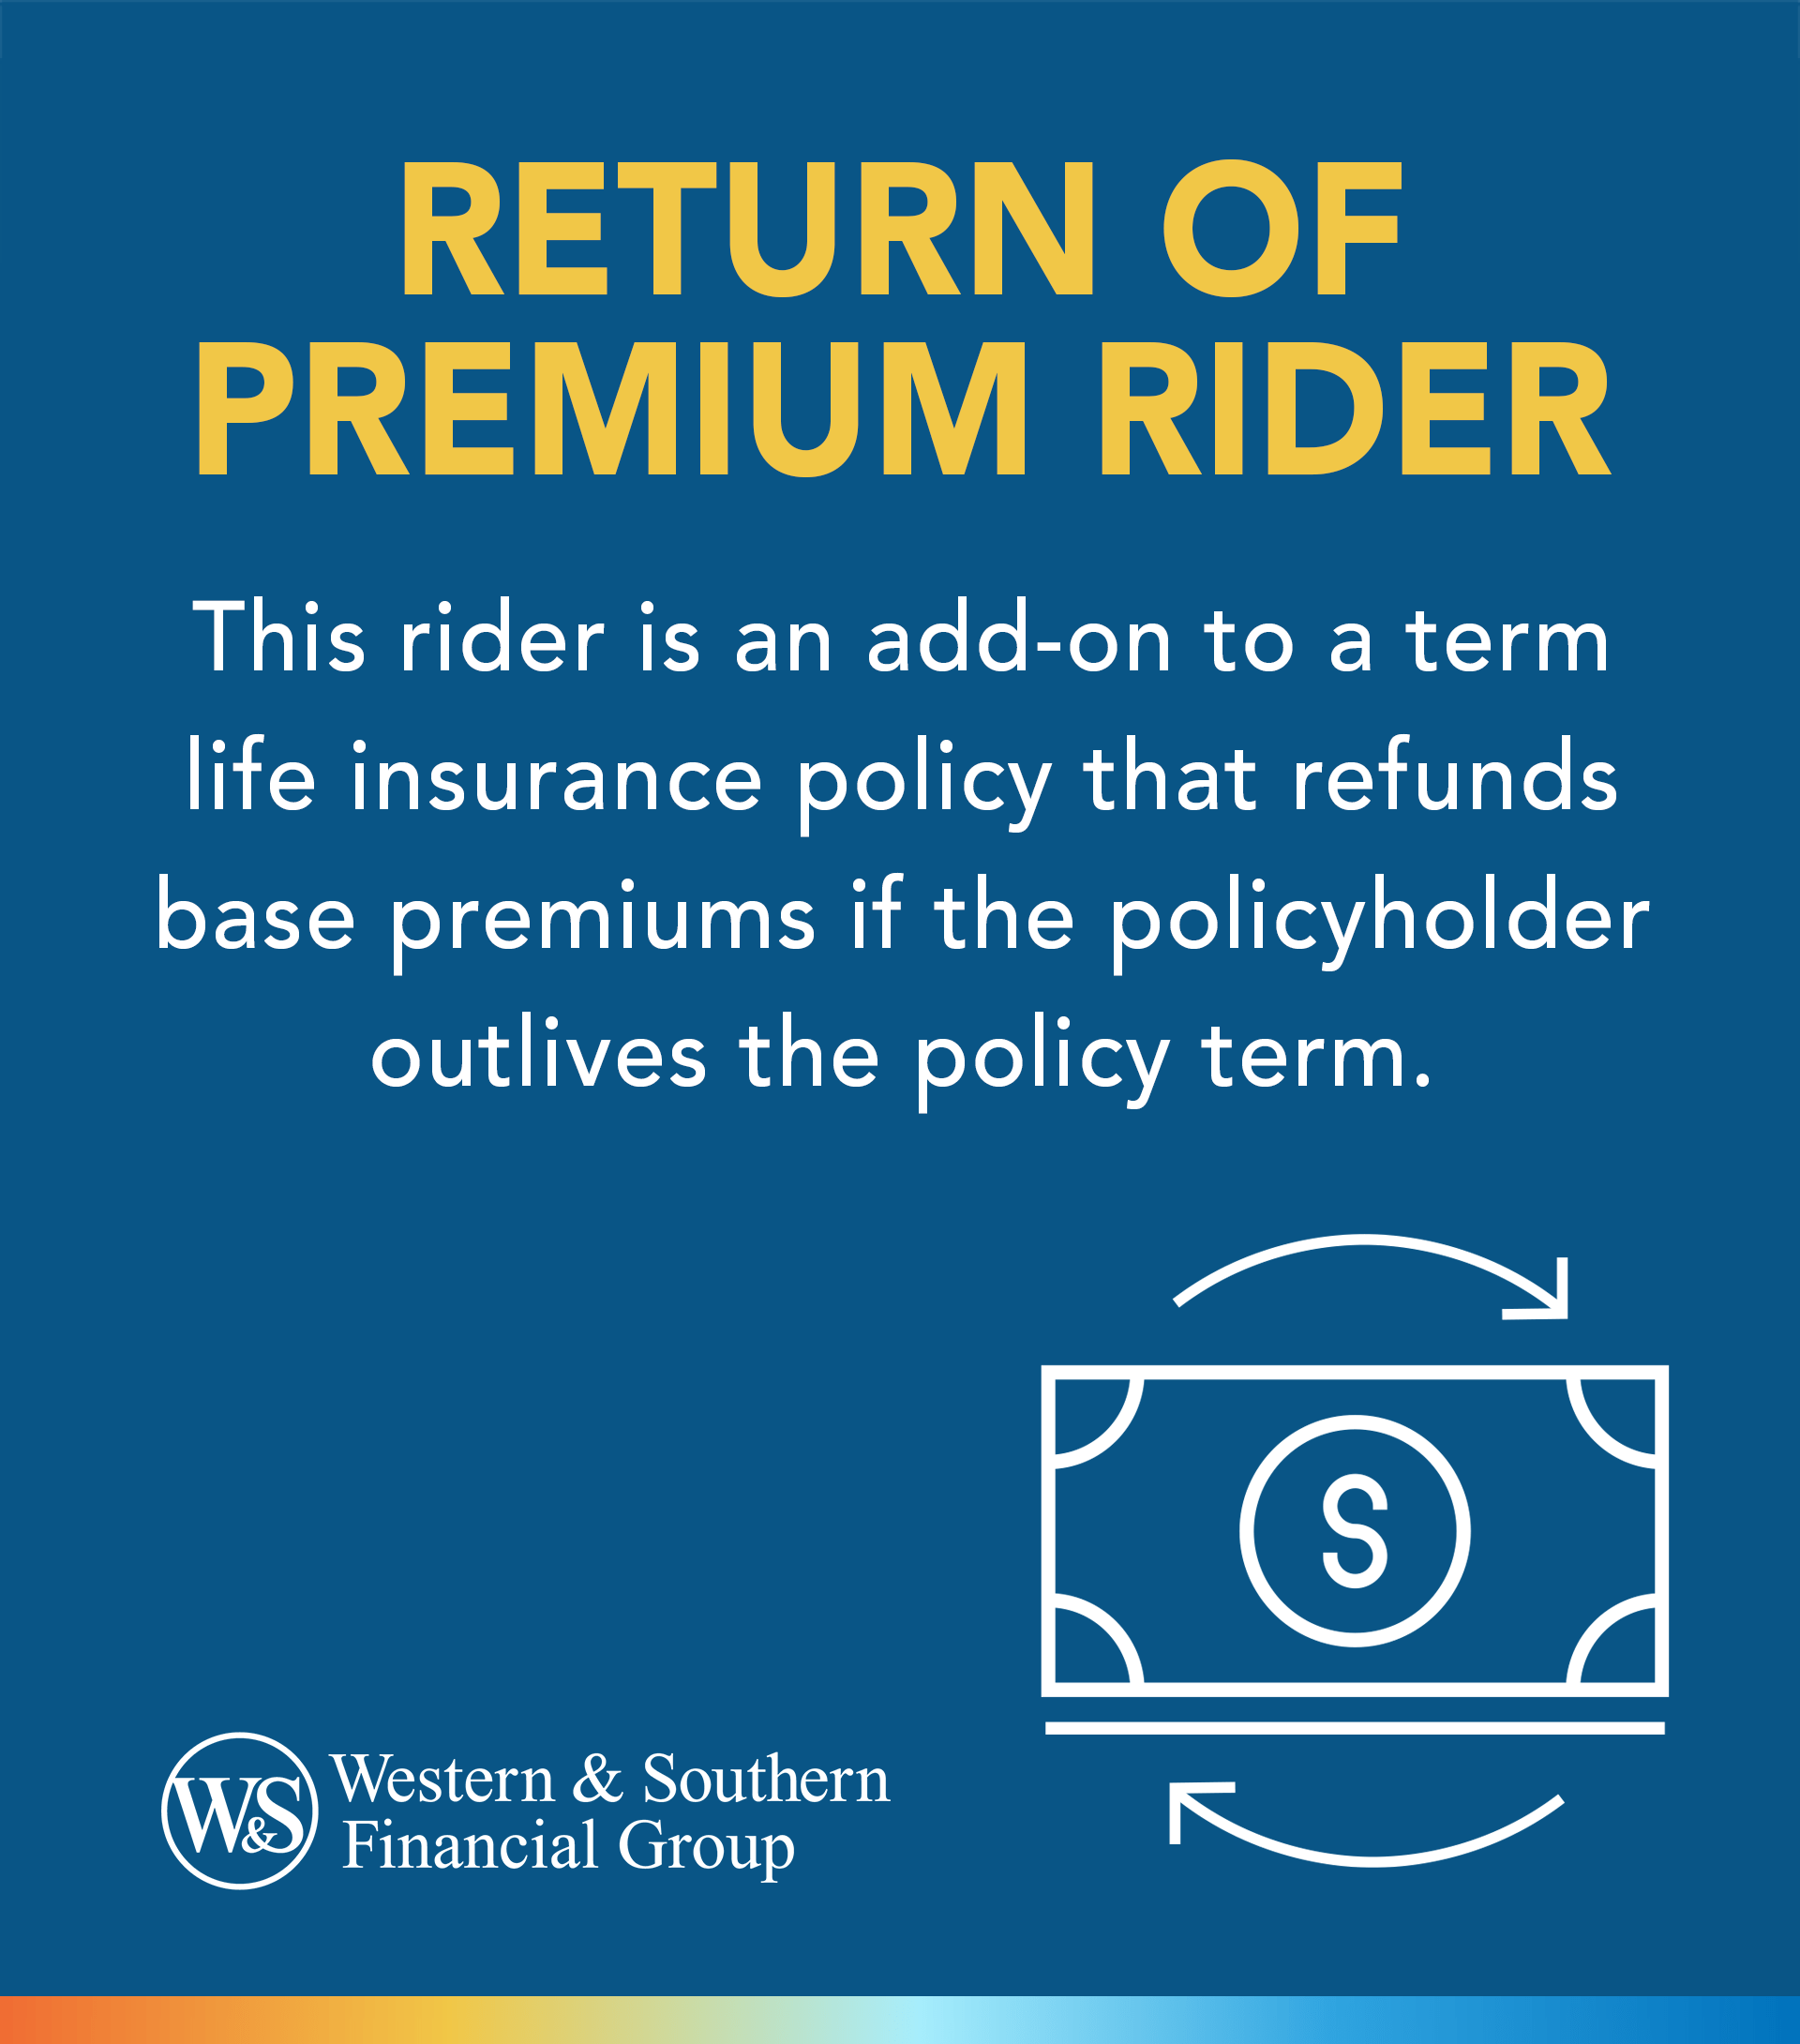 Return of Premium Rider Definition